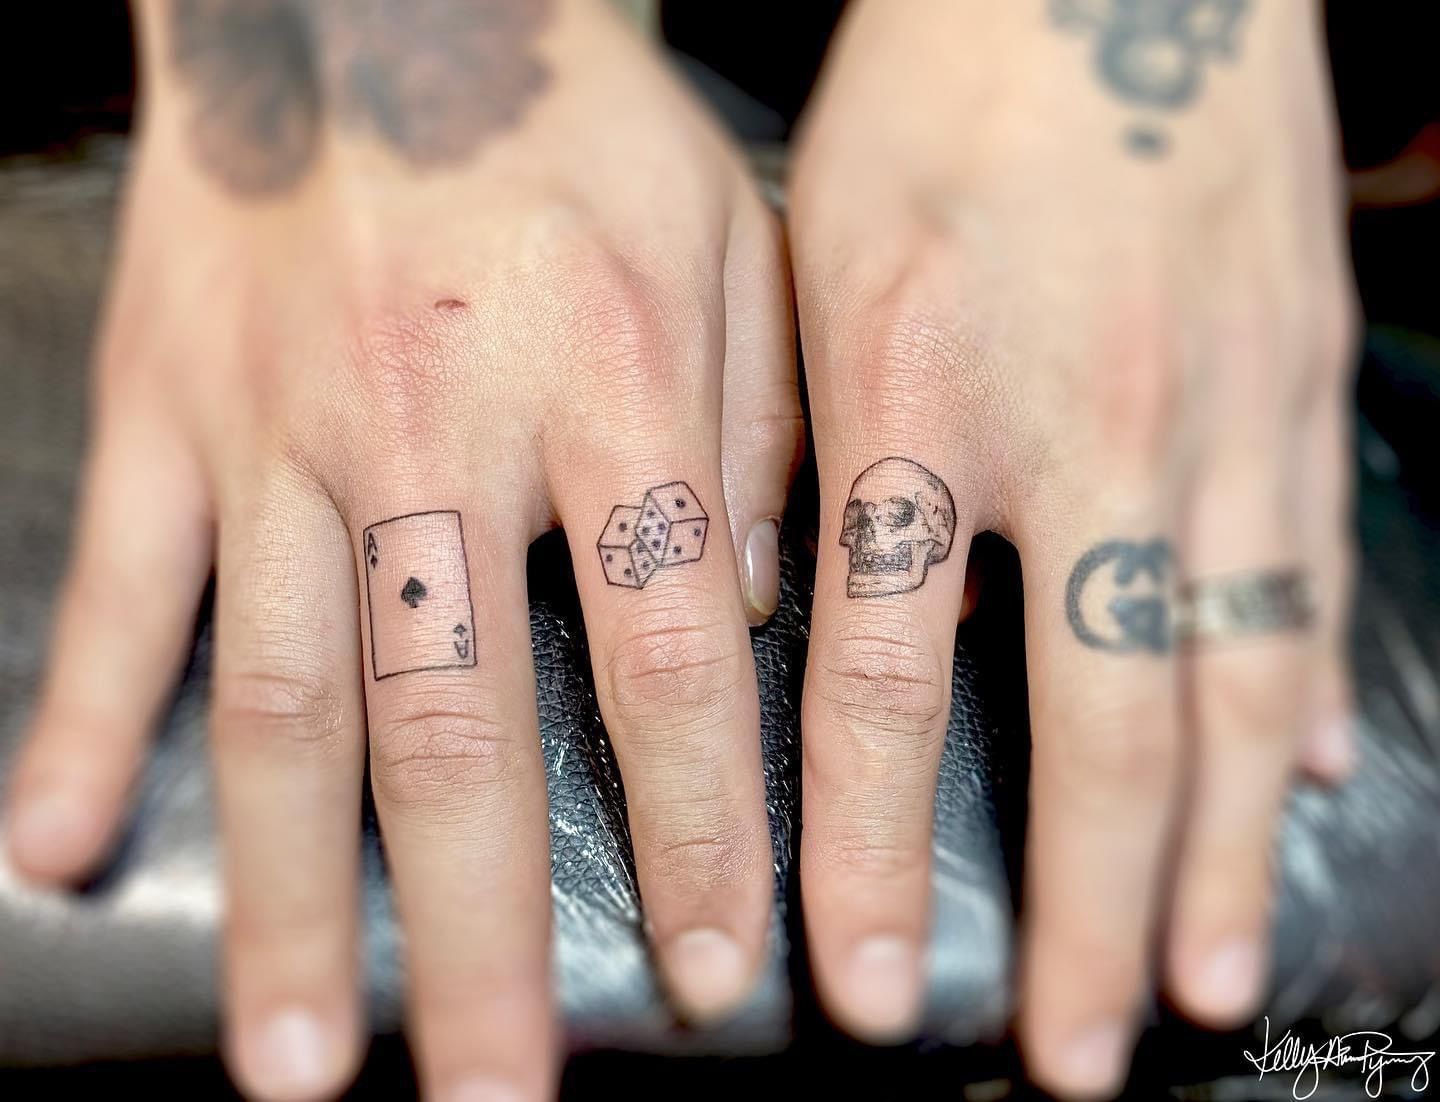 Dr Woo Tattoo | Skull finger tattoos, Finger tattoos, Hand tattoos